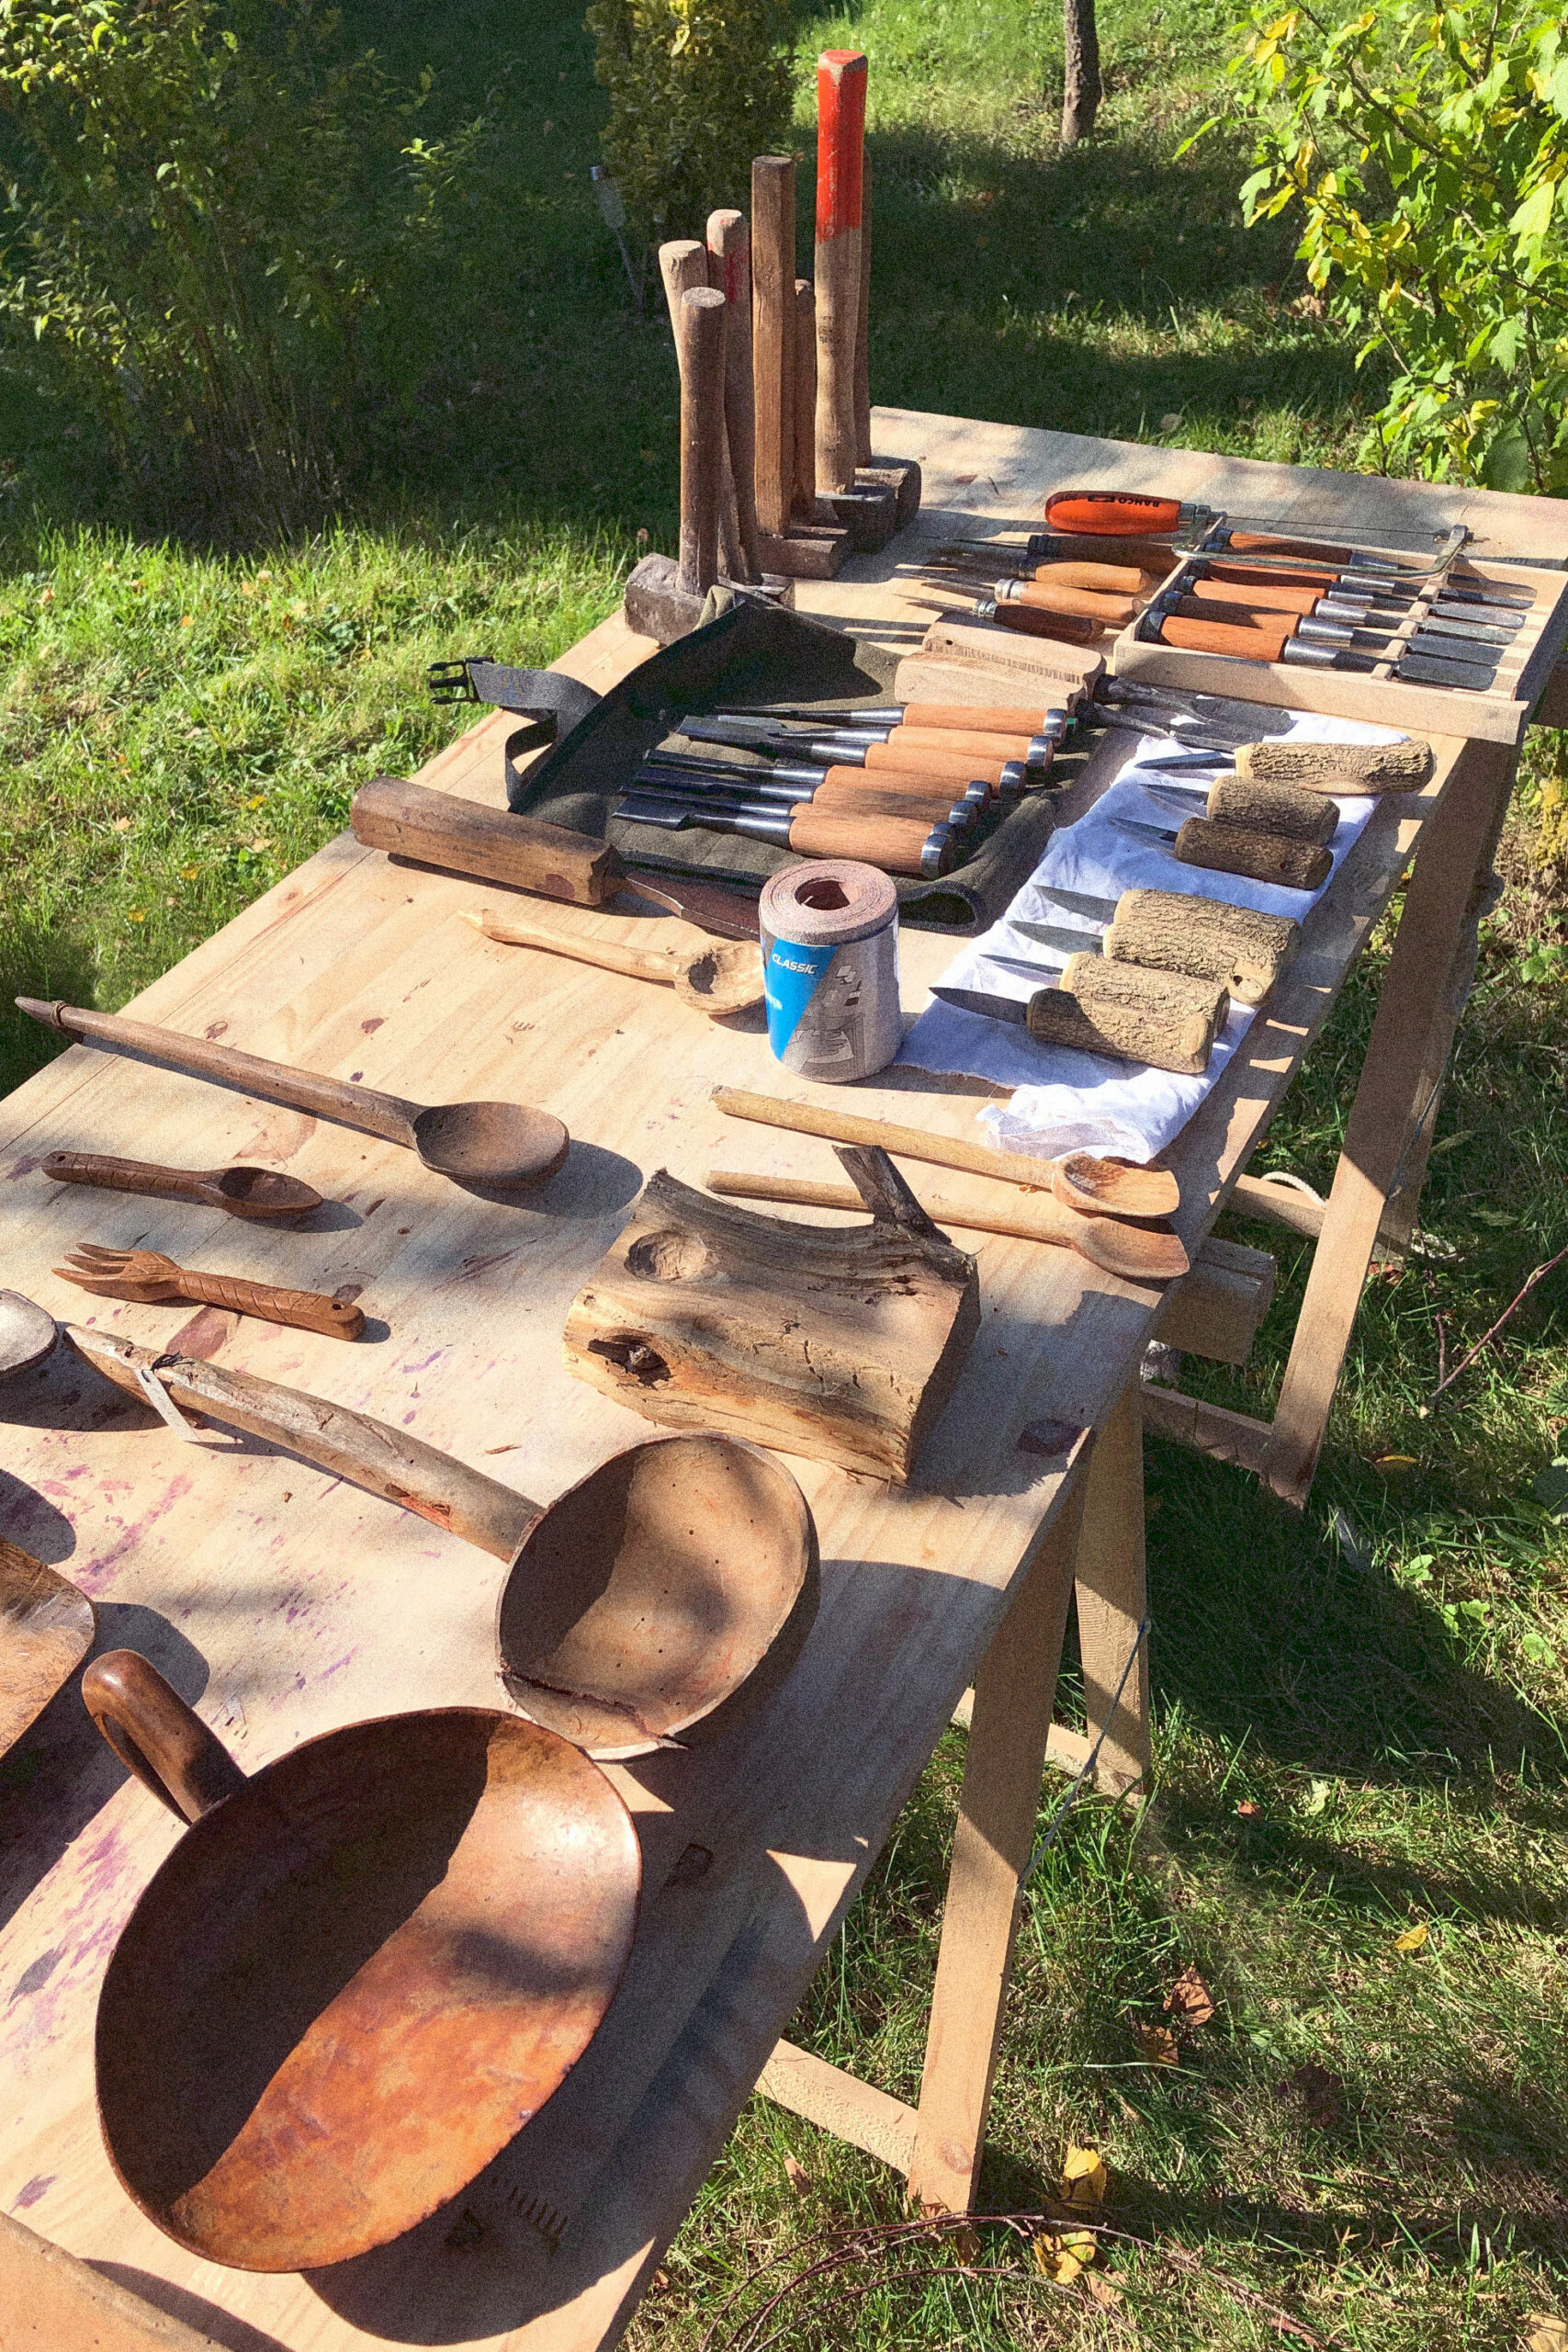 –> 5. </br>
Atelier 1: Cuillères en Boulot</br> 
cuillères de la collection du Musée de Vassogne et outils pour sculpter le bois)